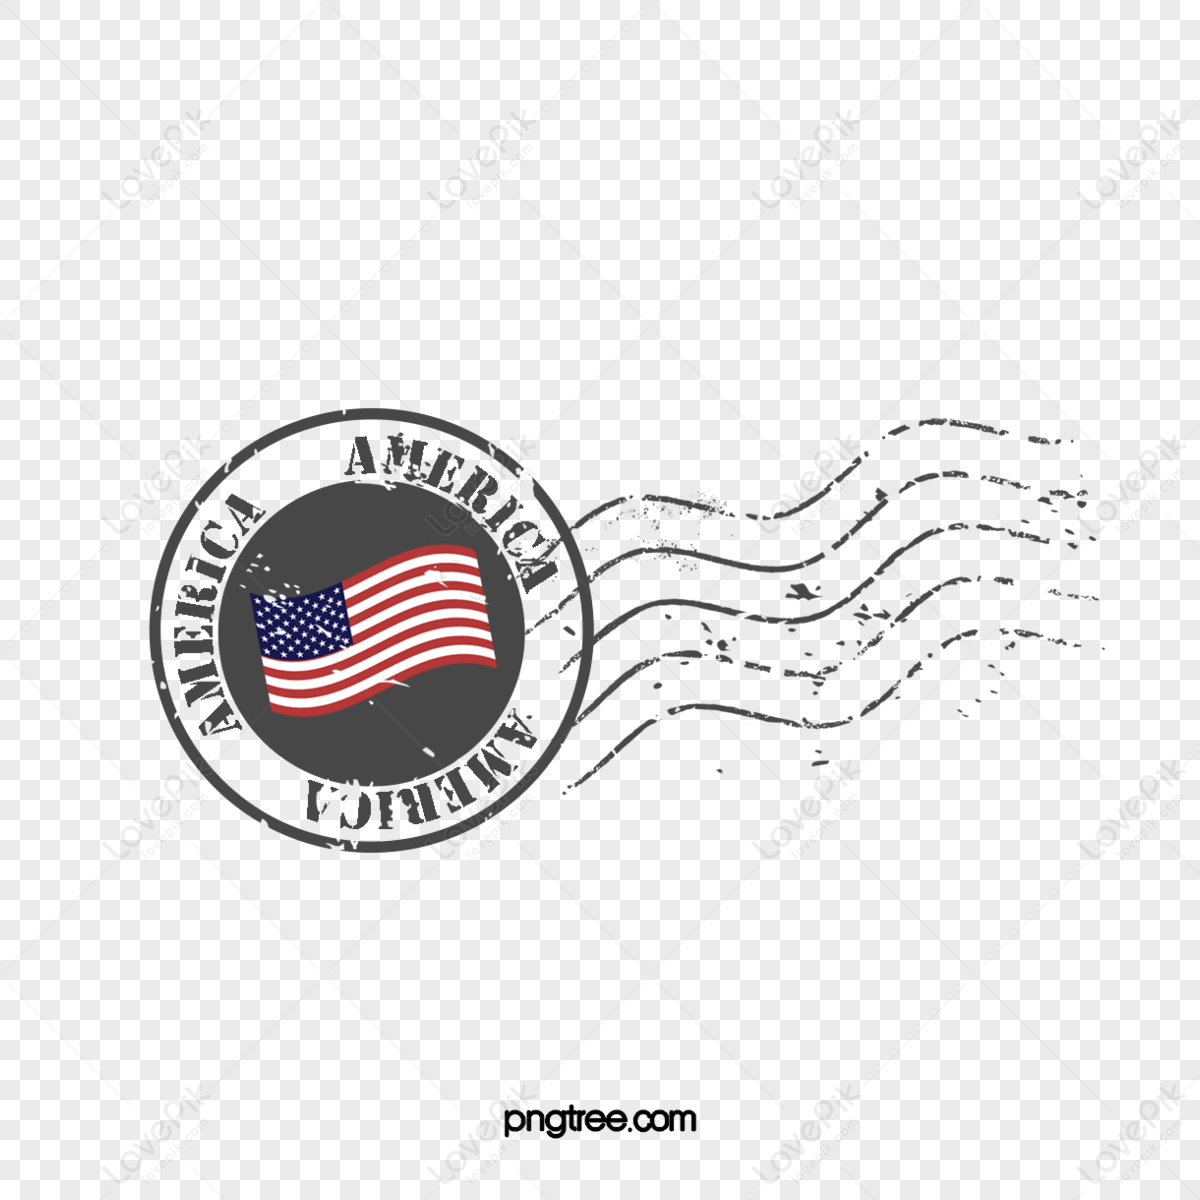 Bandiera Americana Immagini PNG, Vettori E File PSD